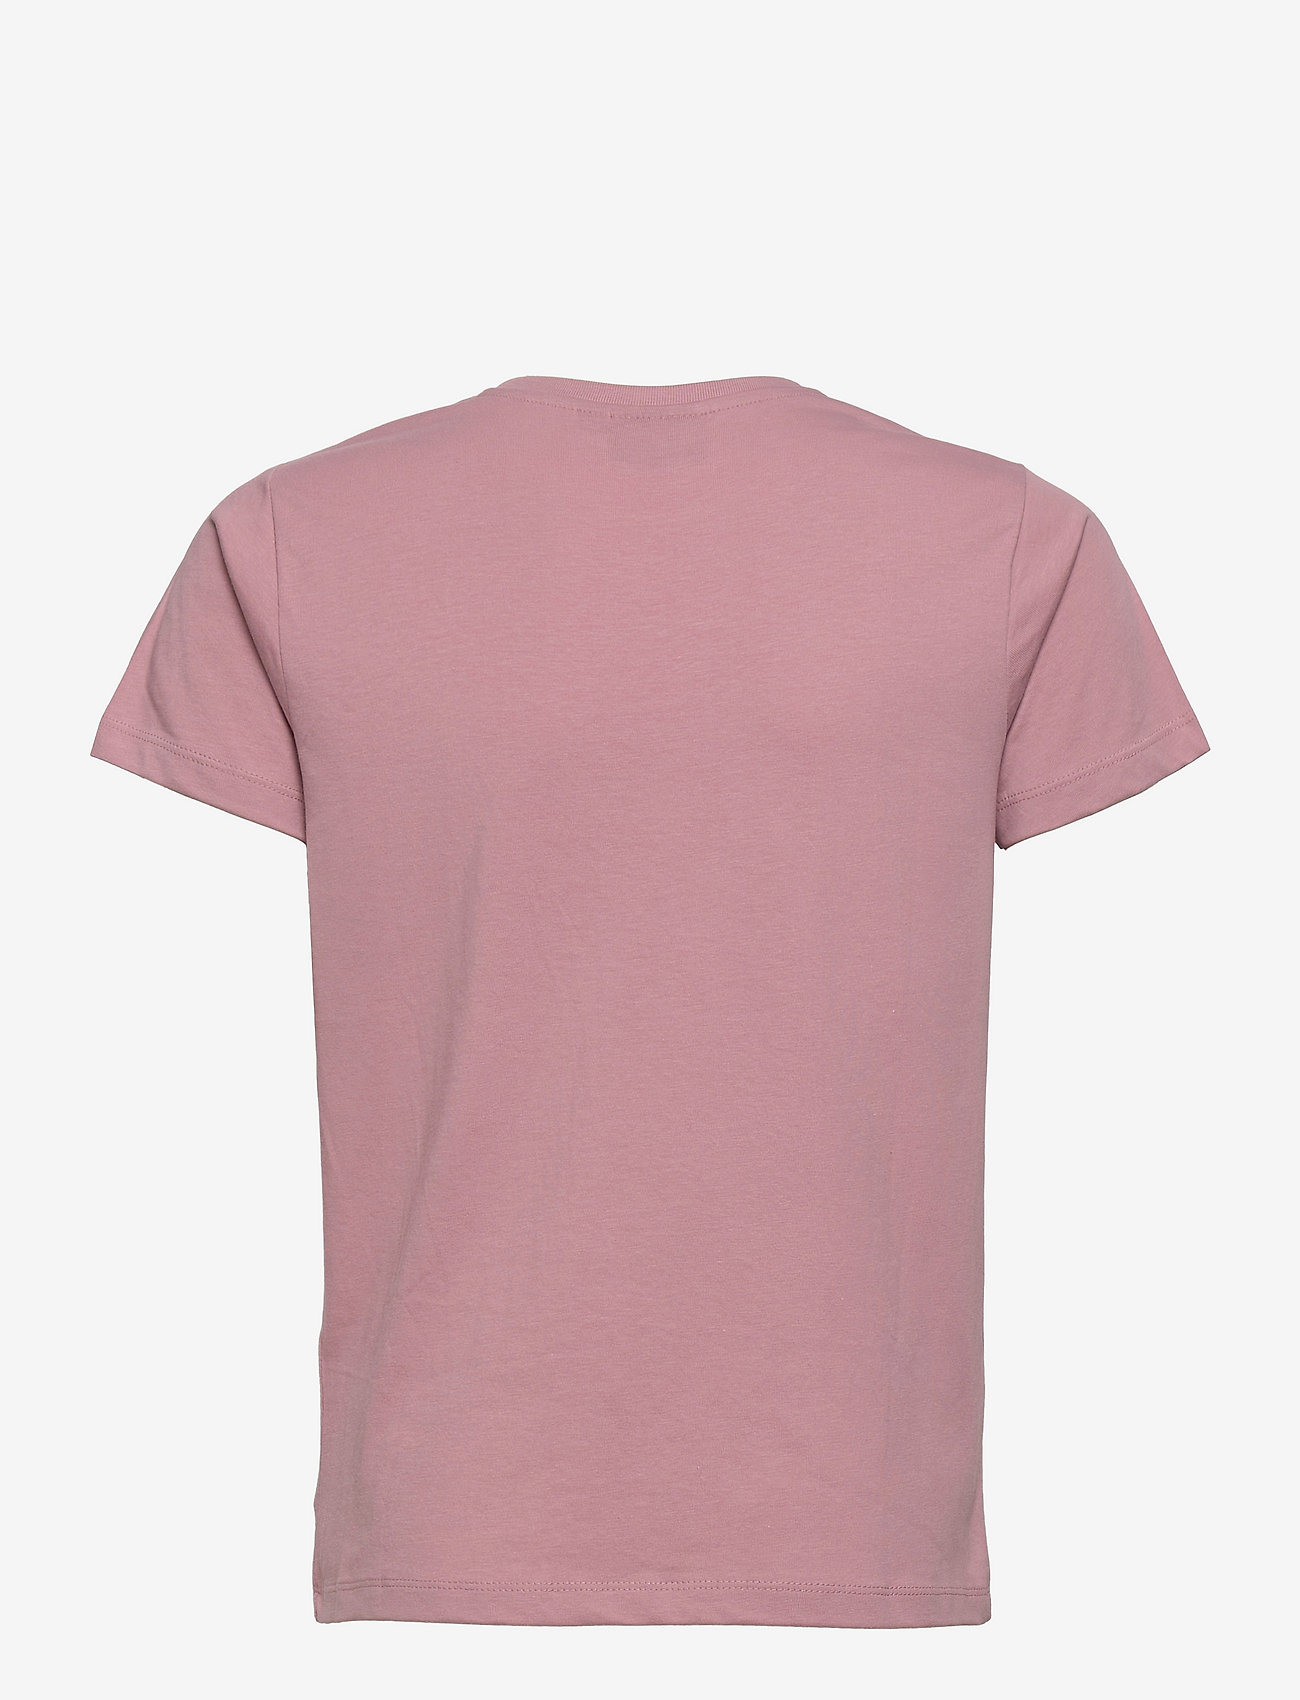 Hummel - hmlPROUD T-SHIRT S/S - kortärmade t-shirts - lilas - 1